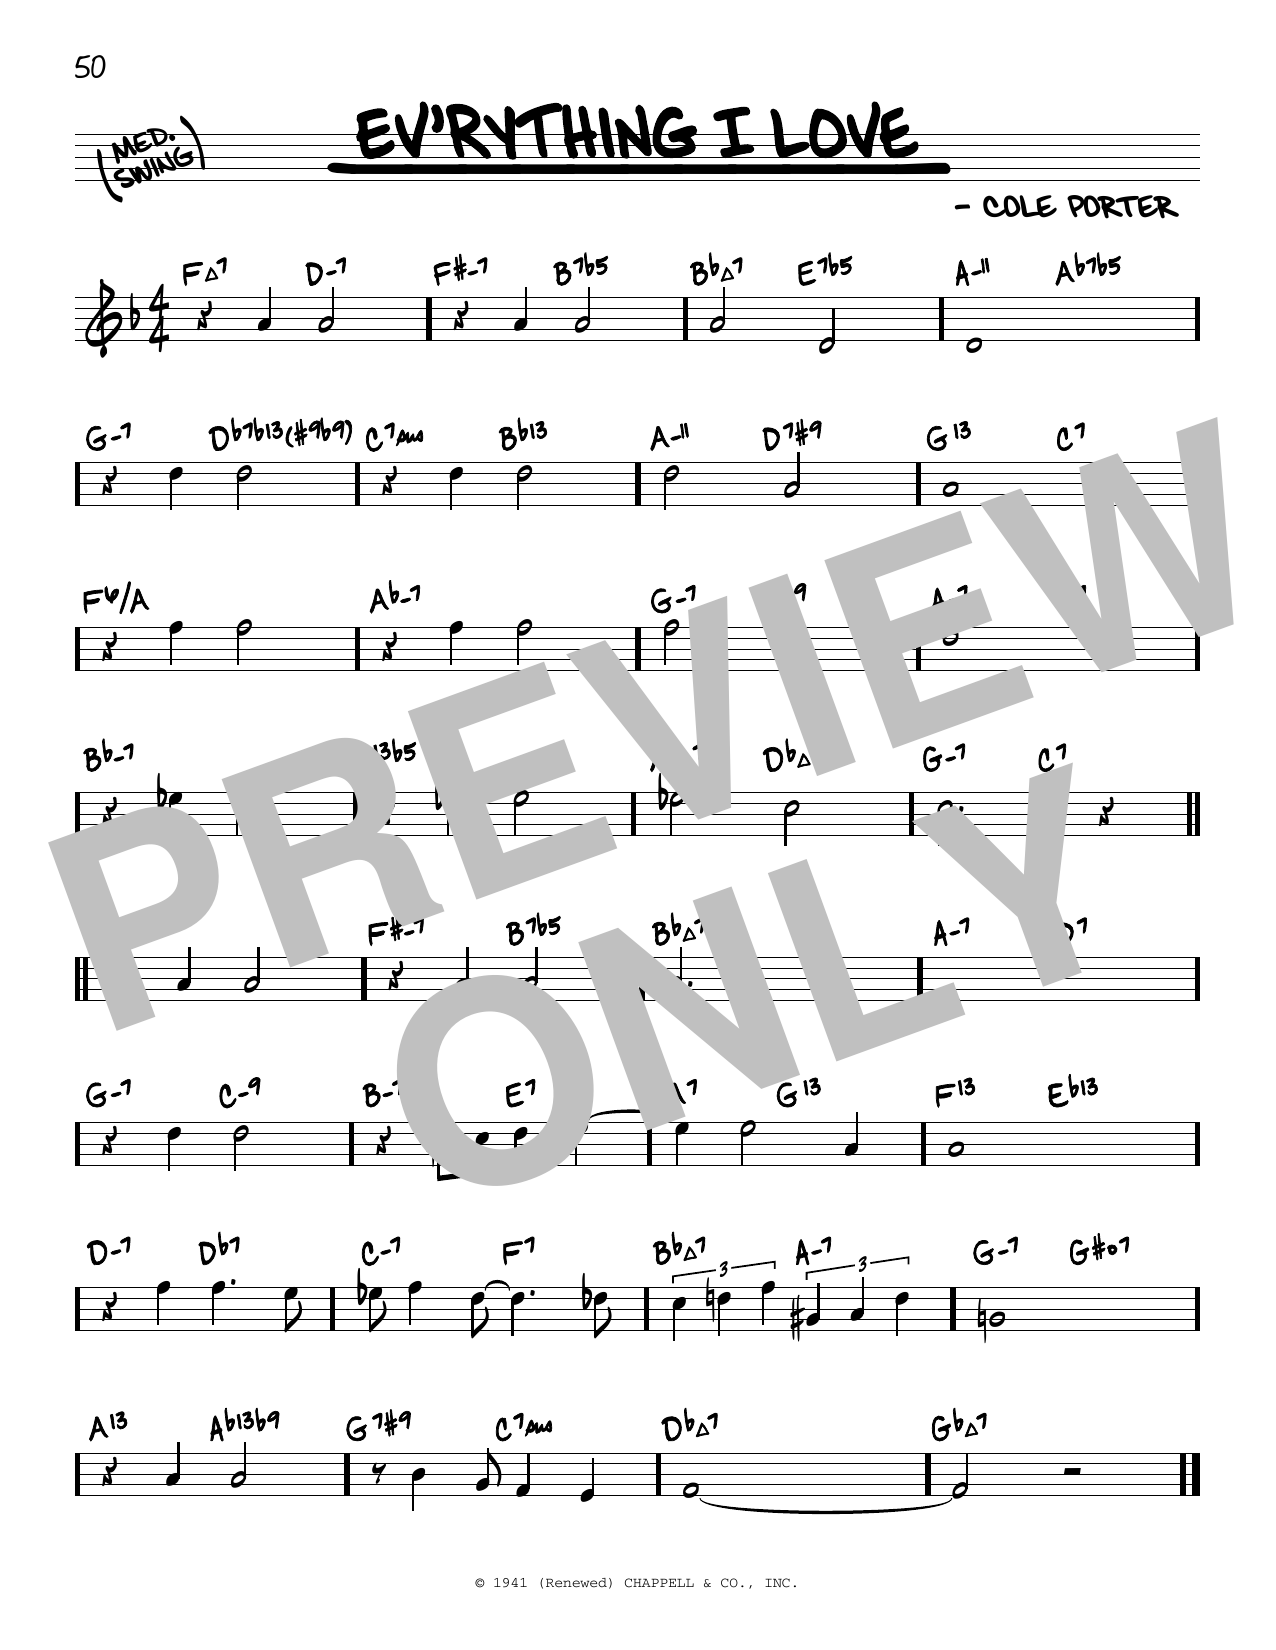 Cole Porter Ev'rything I Love (arr. David Hazeltine) Sheet Music Notes & Chords for Real Book – Enhanced Chords - Download or Print PDF